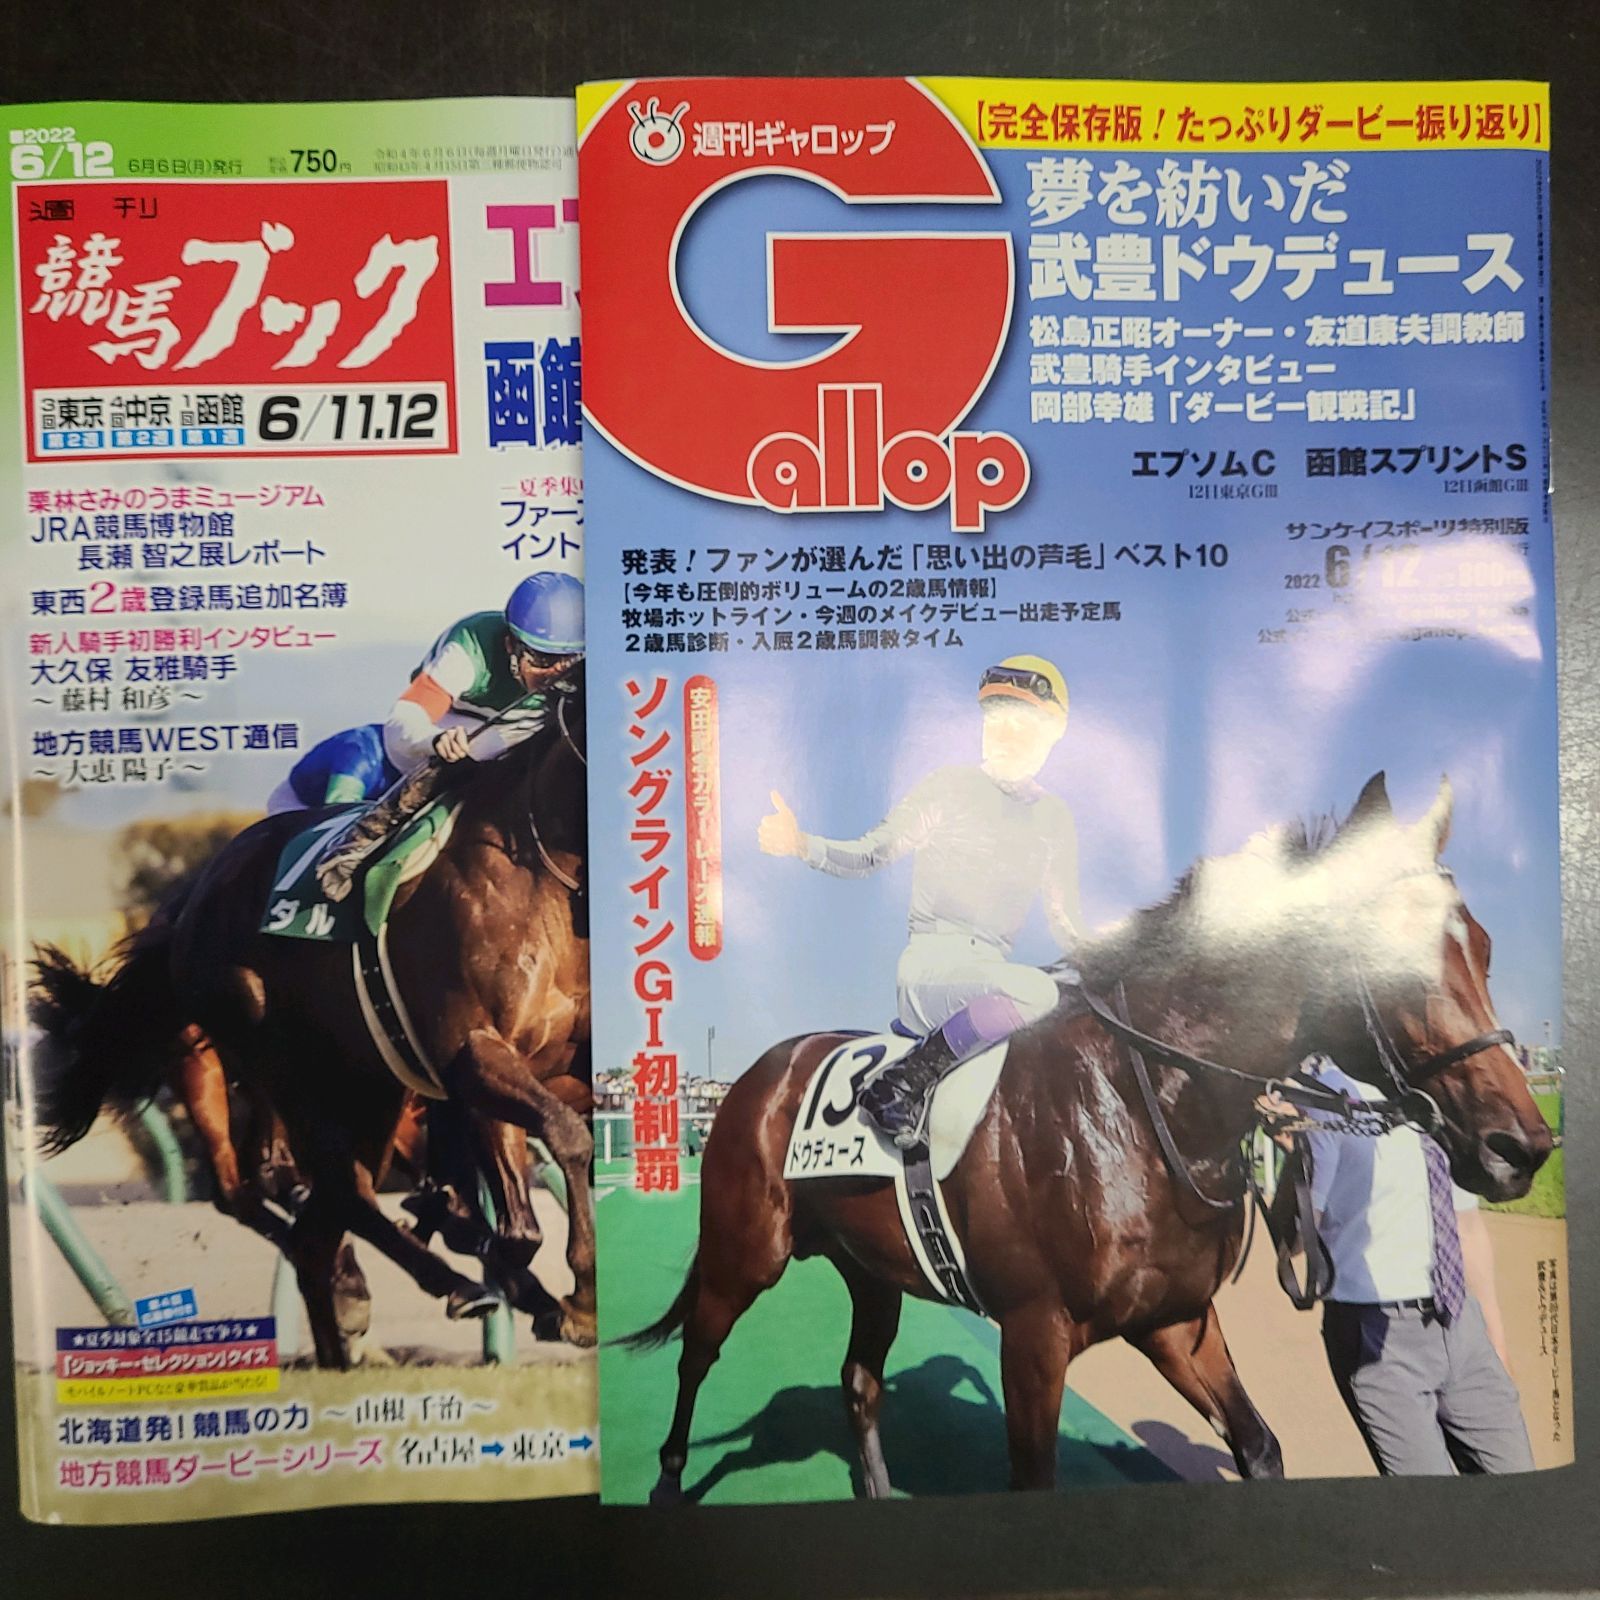 激安格安割引情報満載 週刊Gallop 2018年 3冊セット batumi.ge